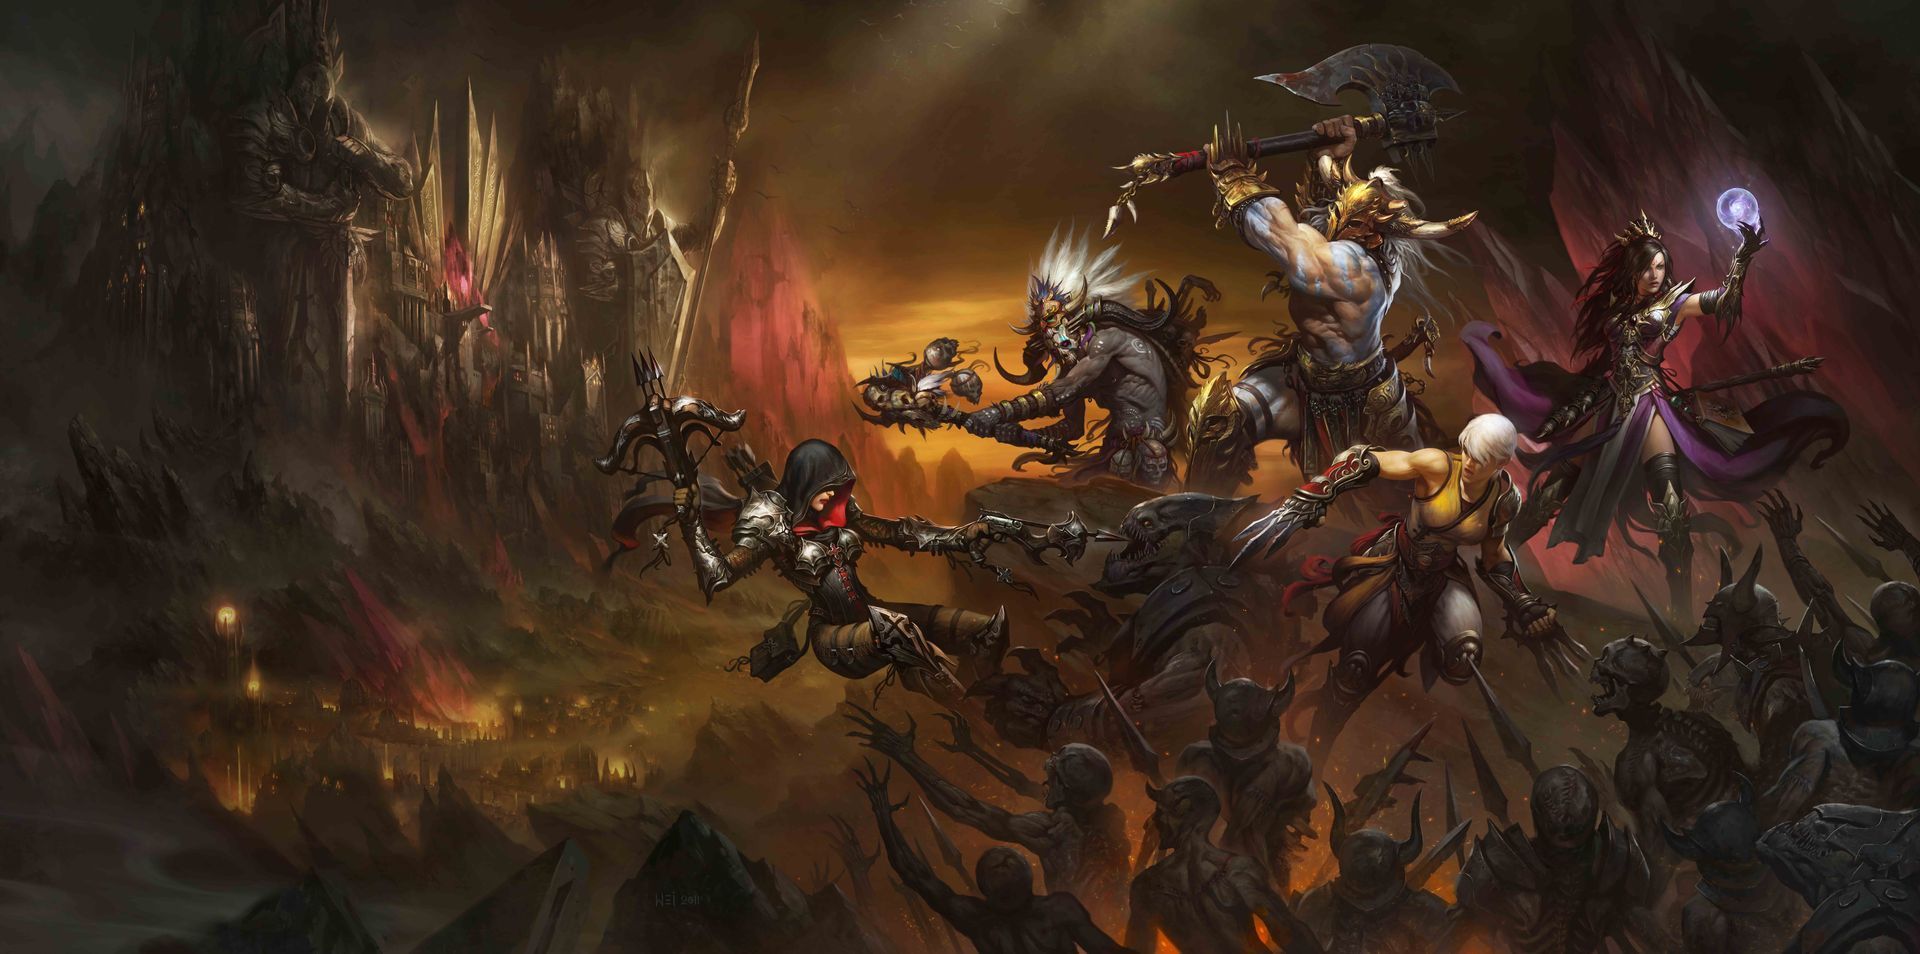 DH art, wallpapers etc - Forums - Diablo III